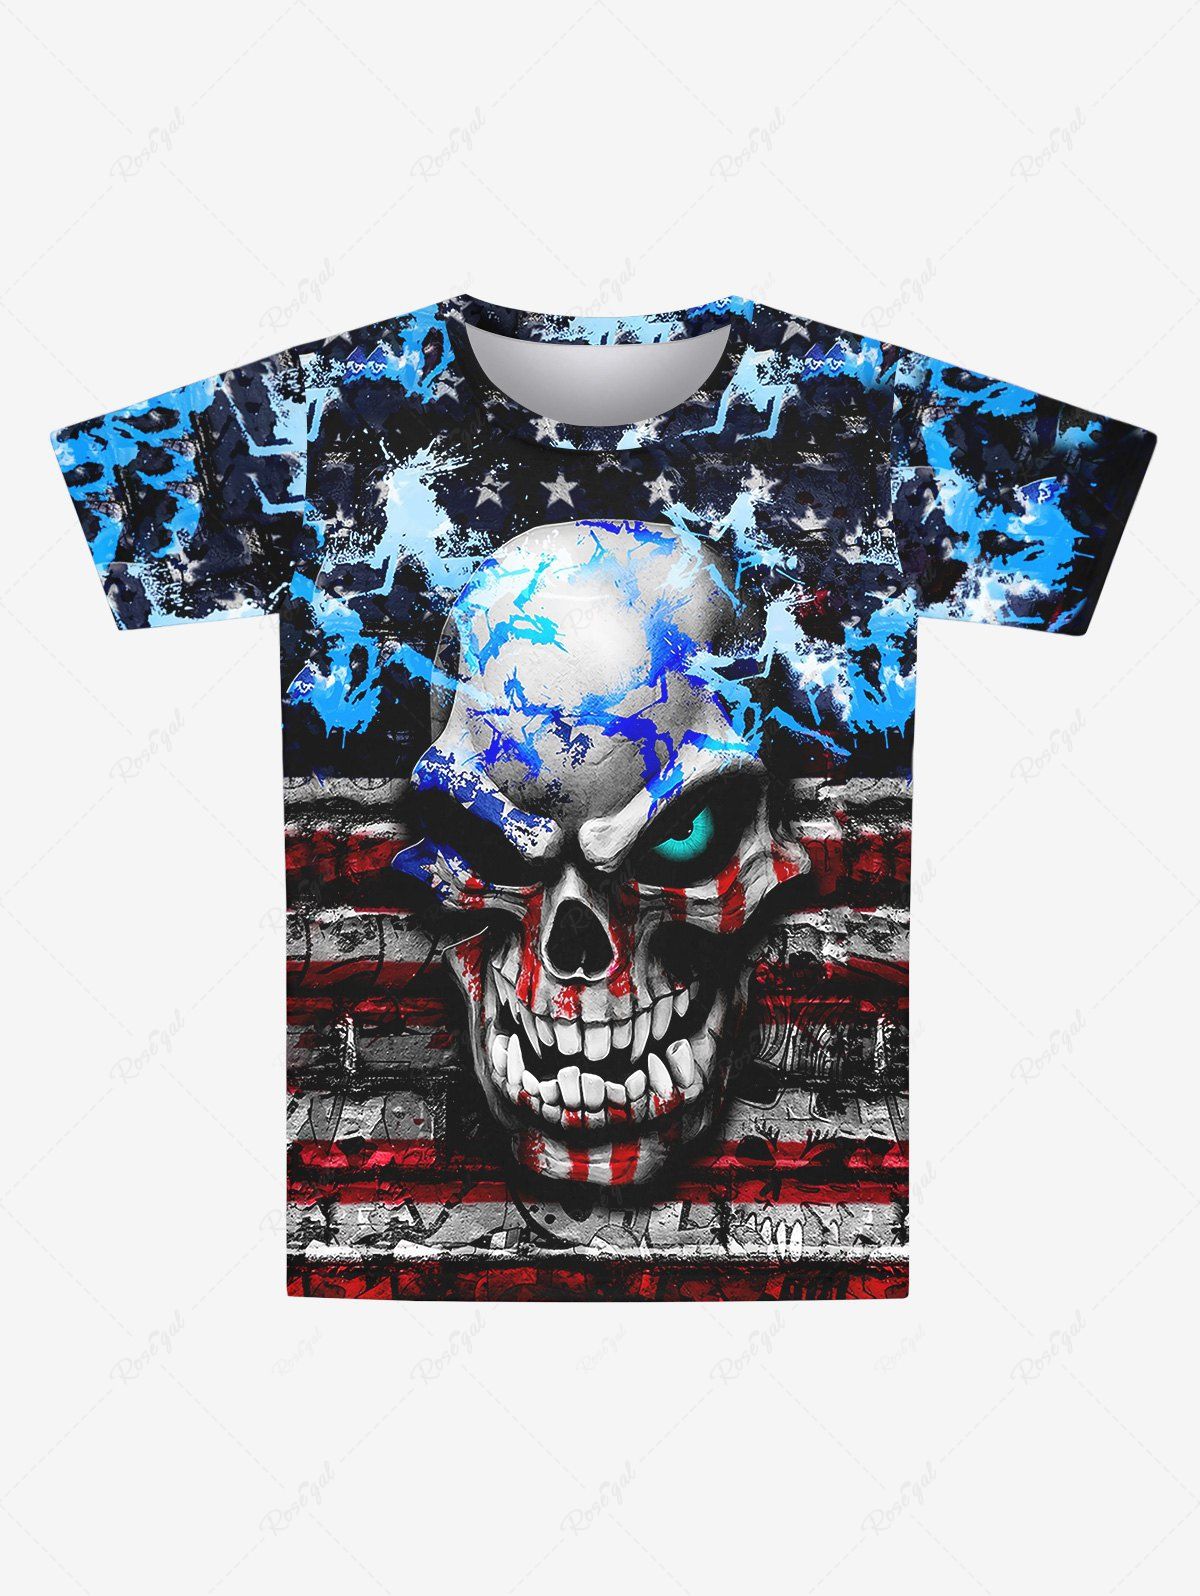 Hot Gothic 3D Skull Striped Distressed Paint Pentagram Print Short Sleeves T-shirt For Men  